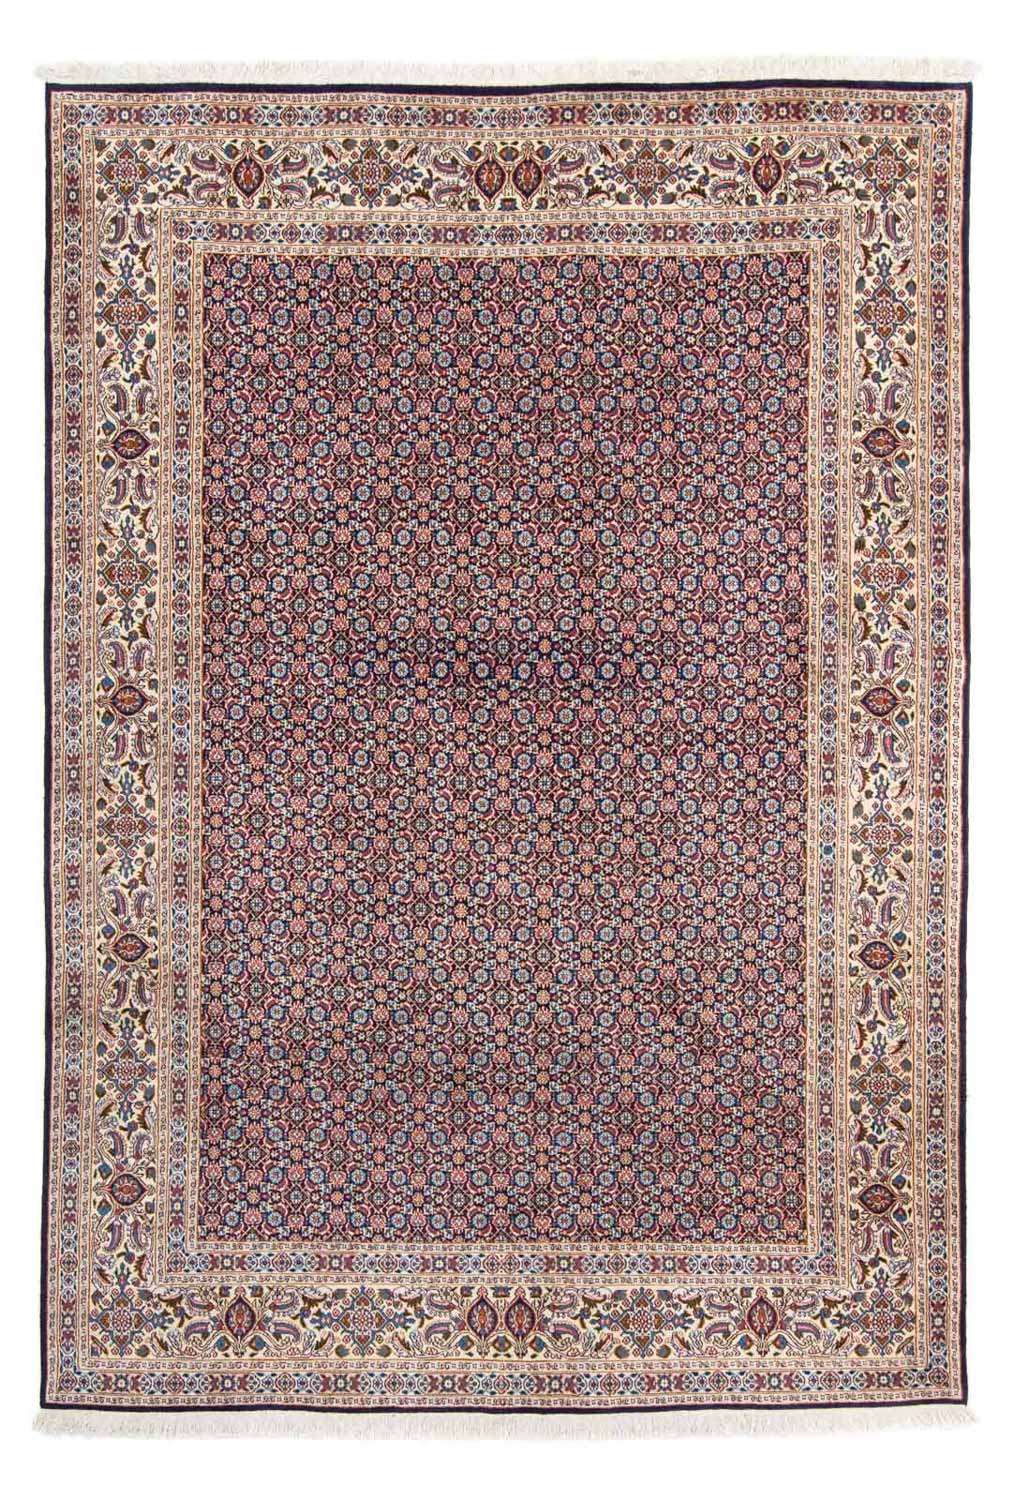 Persisk teppe - klassisk - 298 x 202 cm - mørkeblå